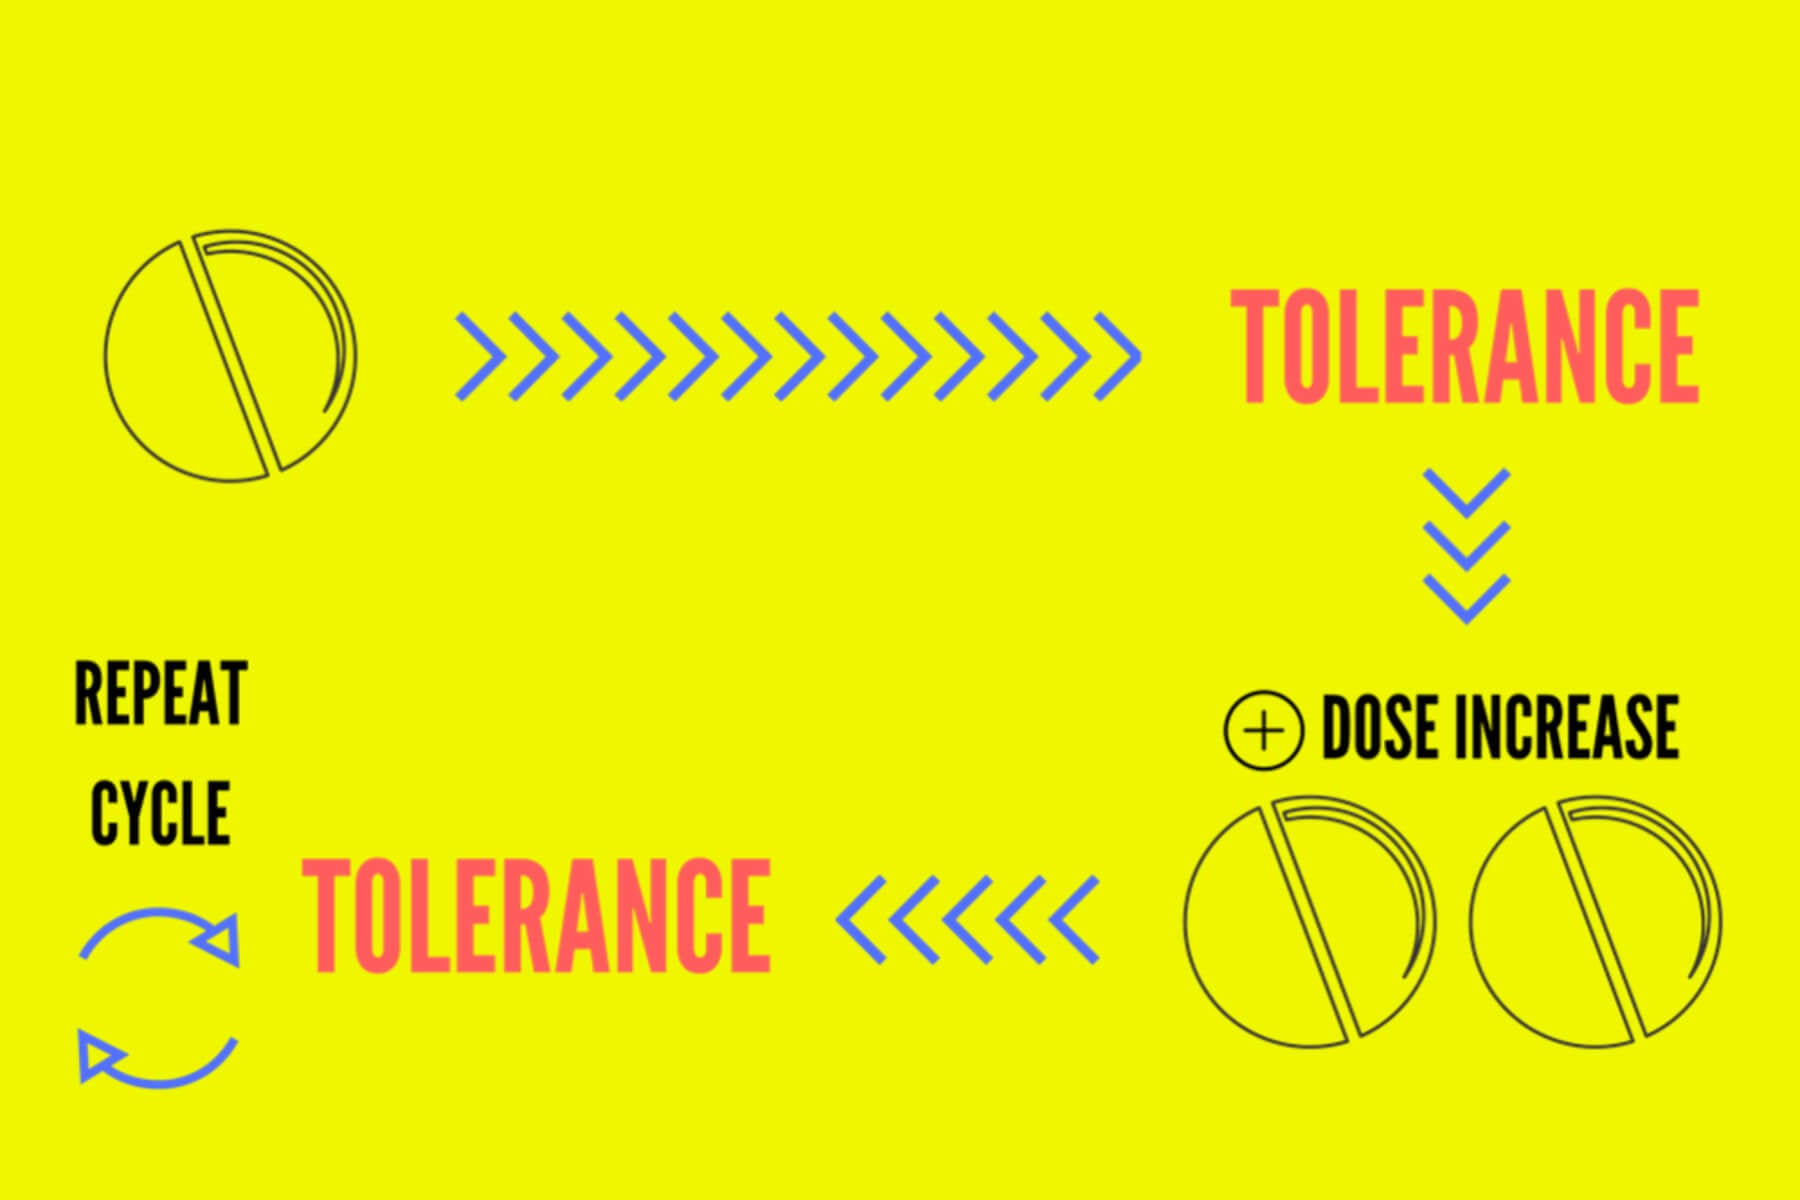 drug-tolerance-definition